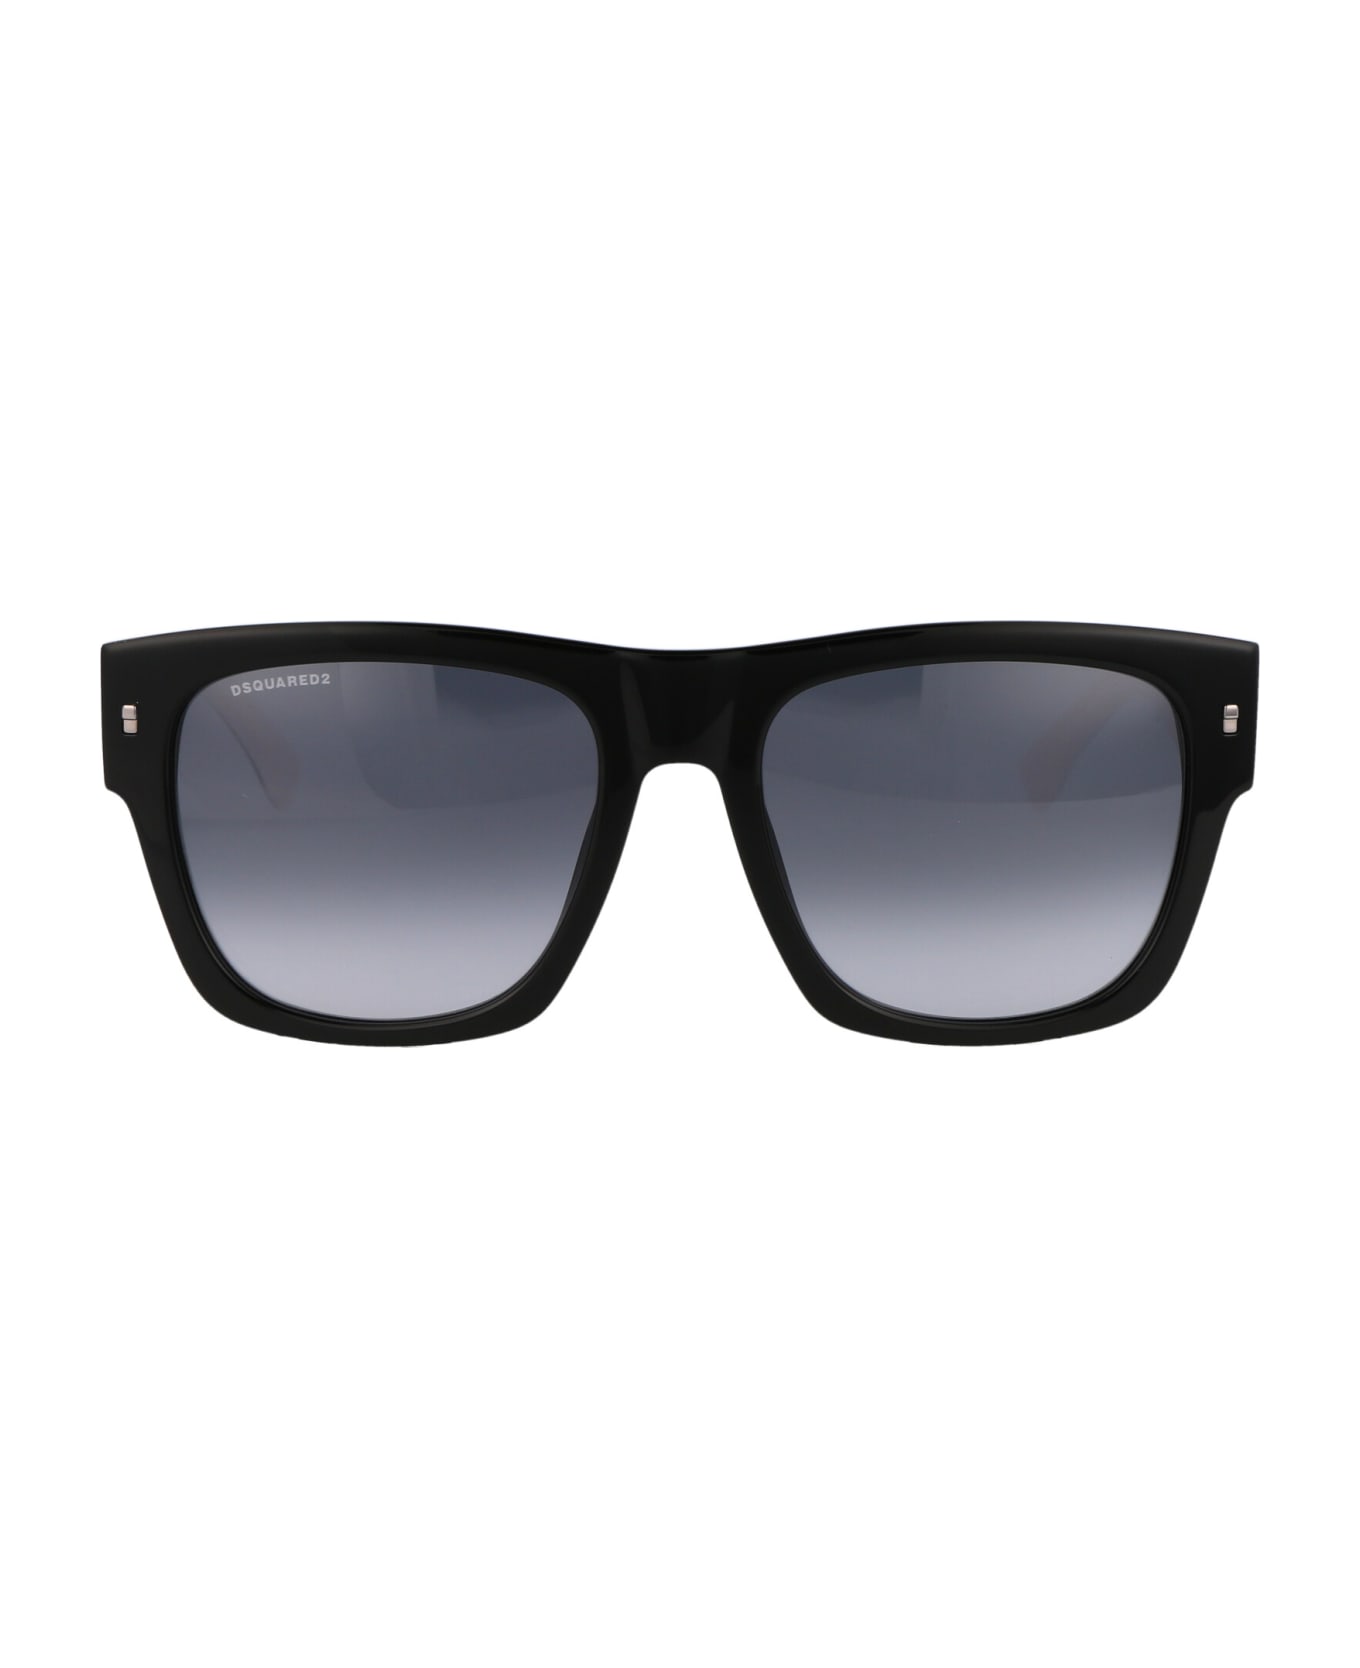 Dsquared2 Eyewear Icon 0004/s Sunglasses - 80S9O BLACK WHITE